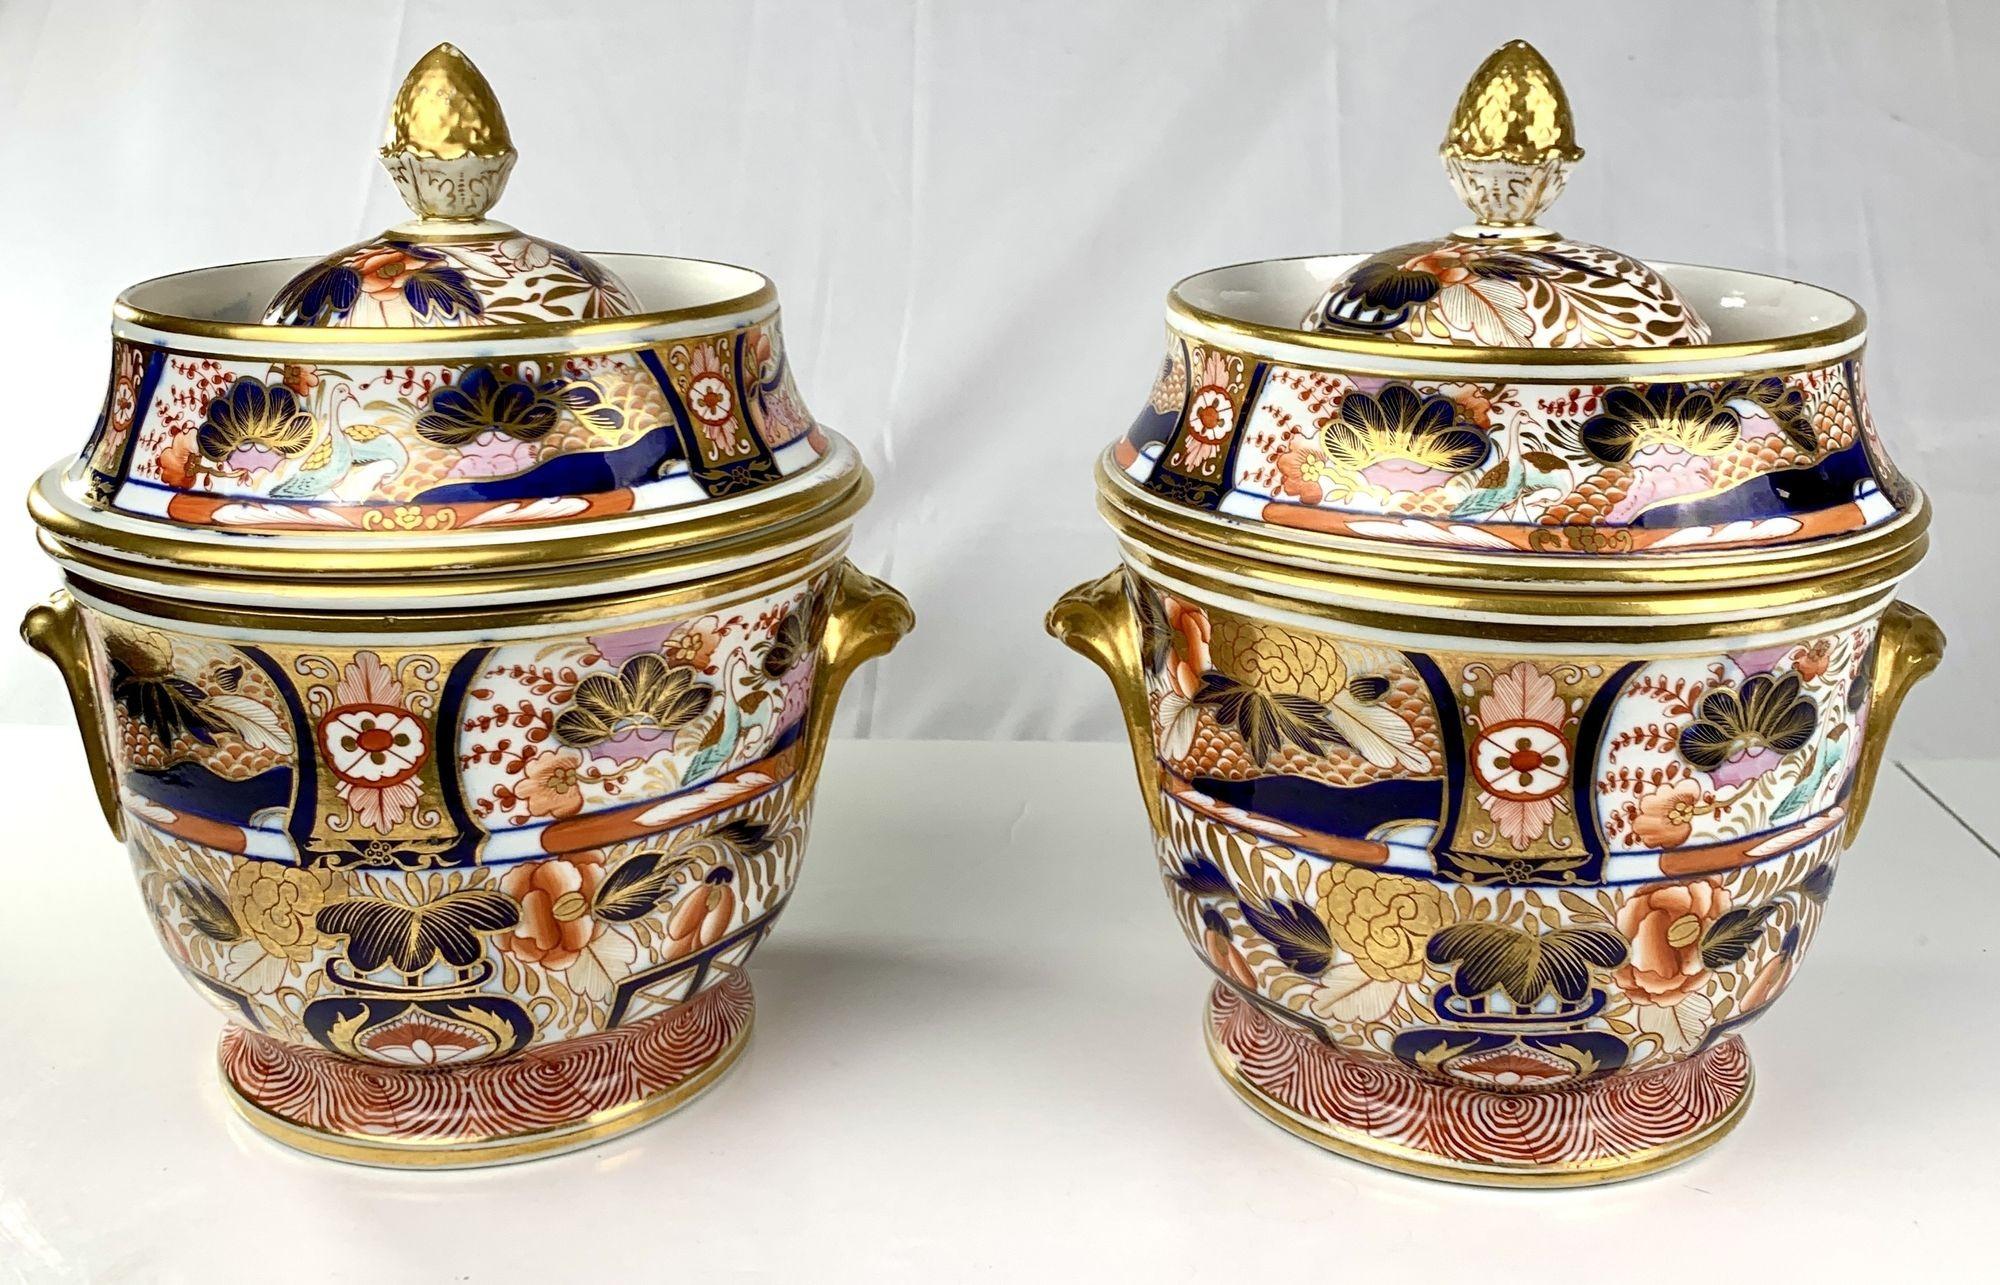  Coalport Porcelain stellte dieses fabelhafte Paar Eiskübel mit Admiral Nelson-Muster um 1810 her.   Die Intensität der Imari-Farben auf dem Admiral Nelson-Muster ist sehr bemerkenswert. 
Es ist der Inbegriff der Regency-Dekoration.  
Sie werden in